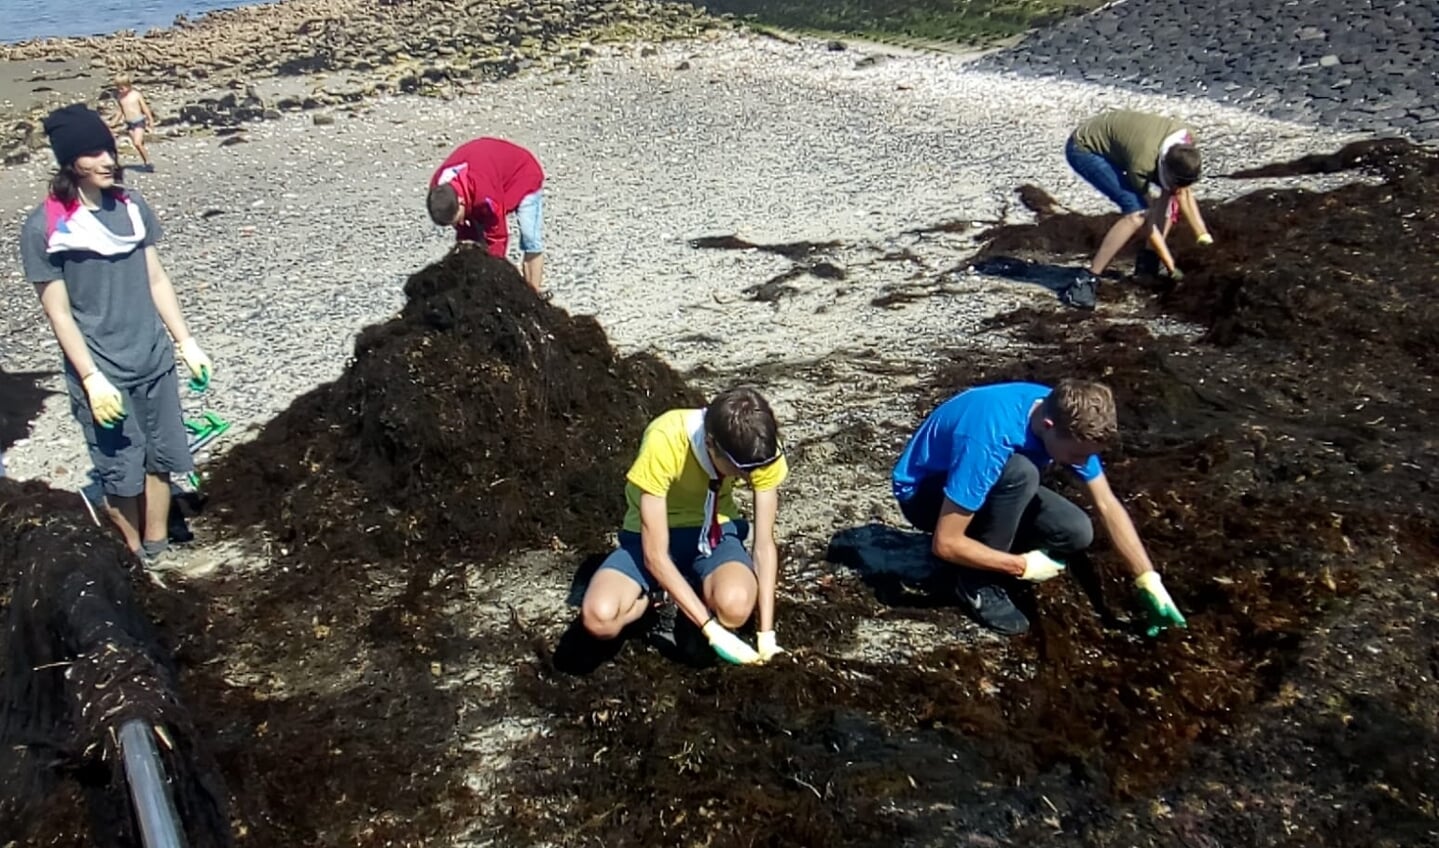 Explorers doorzoeken zeewier op zoek naar plastic. FOTO SANDRA DE DREU